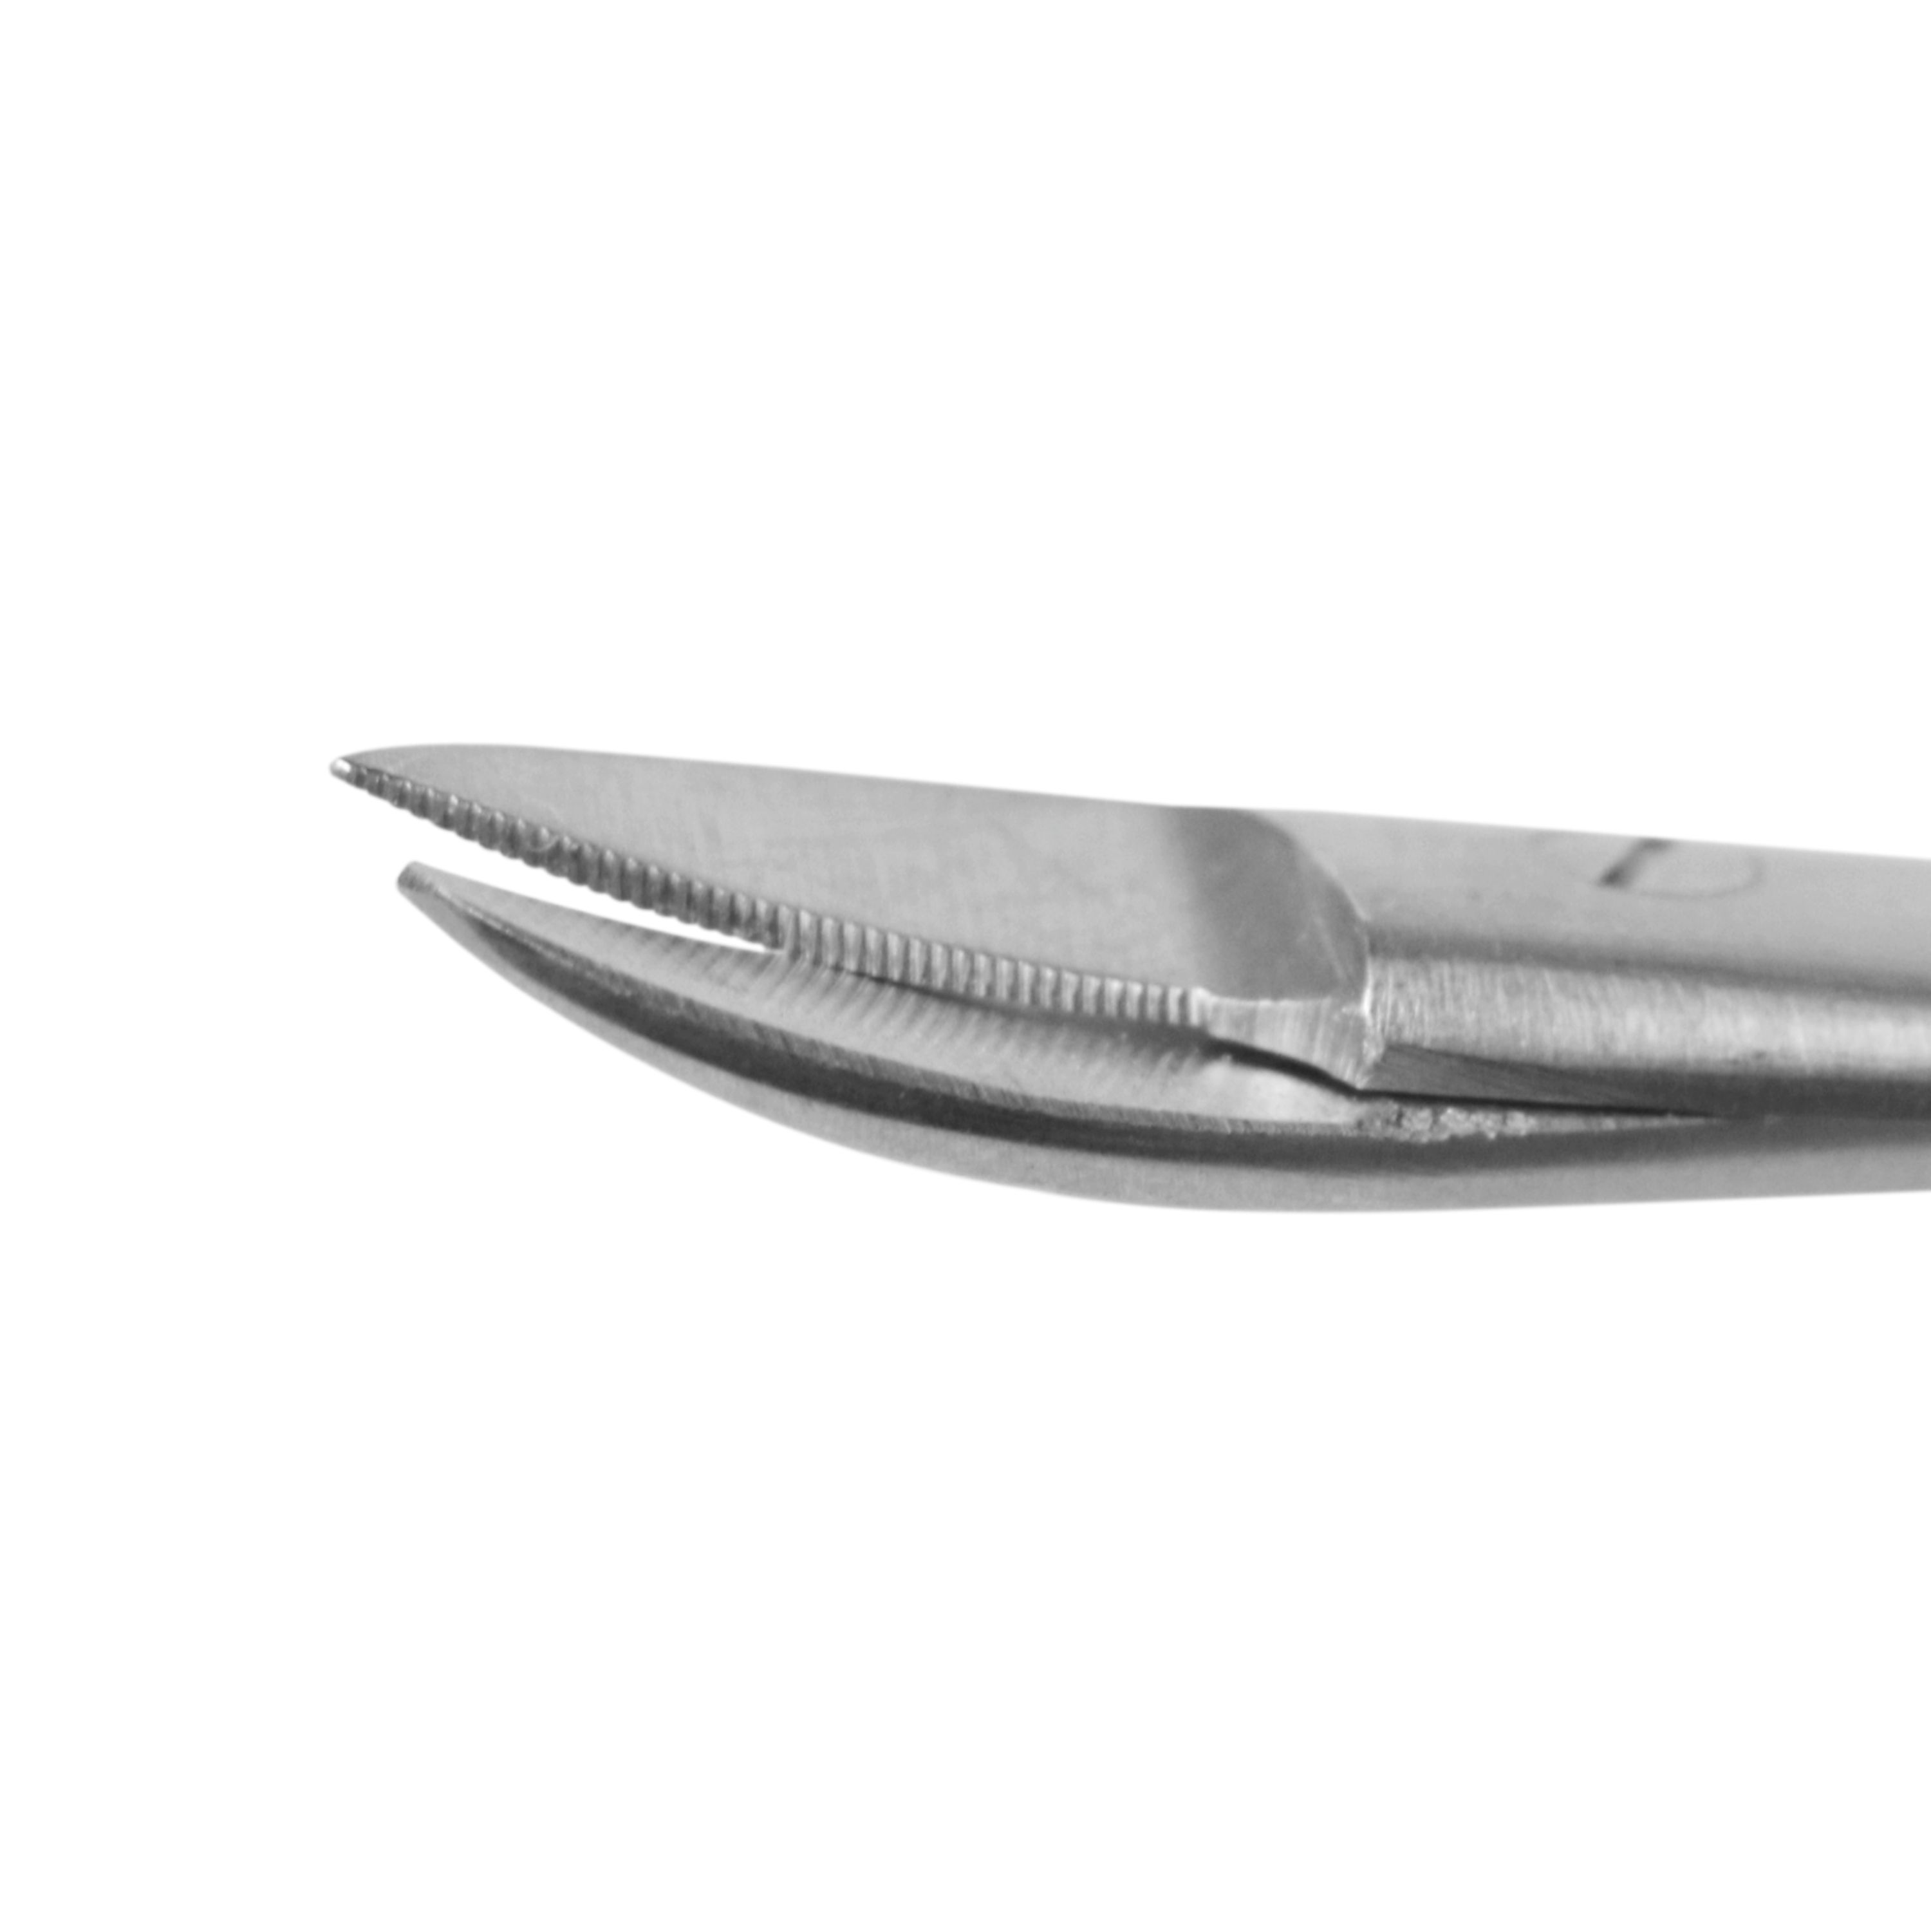 Trust & Care Band & Crown Cutting Scissor 12.5 Cm Curved